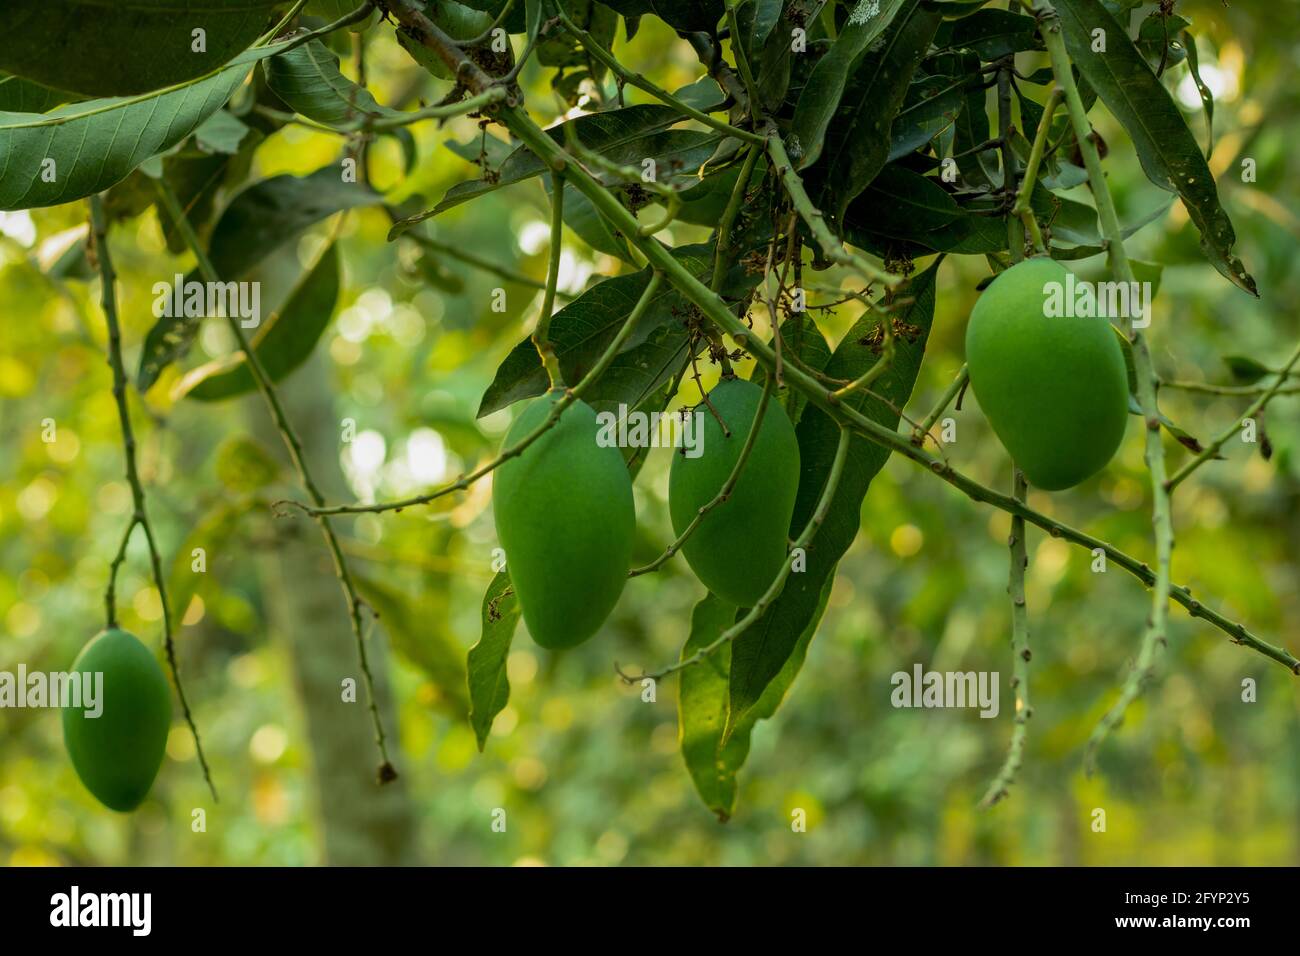 Es gibt viele rohe grüne Mangos, die auf einem großen hängen Mangobaum in einem der größten lokalen Mangogärten Stockfoto